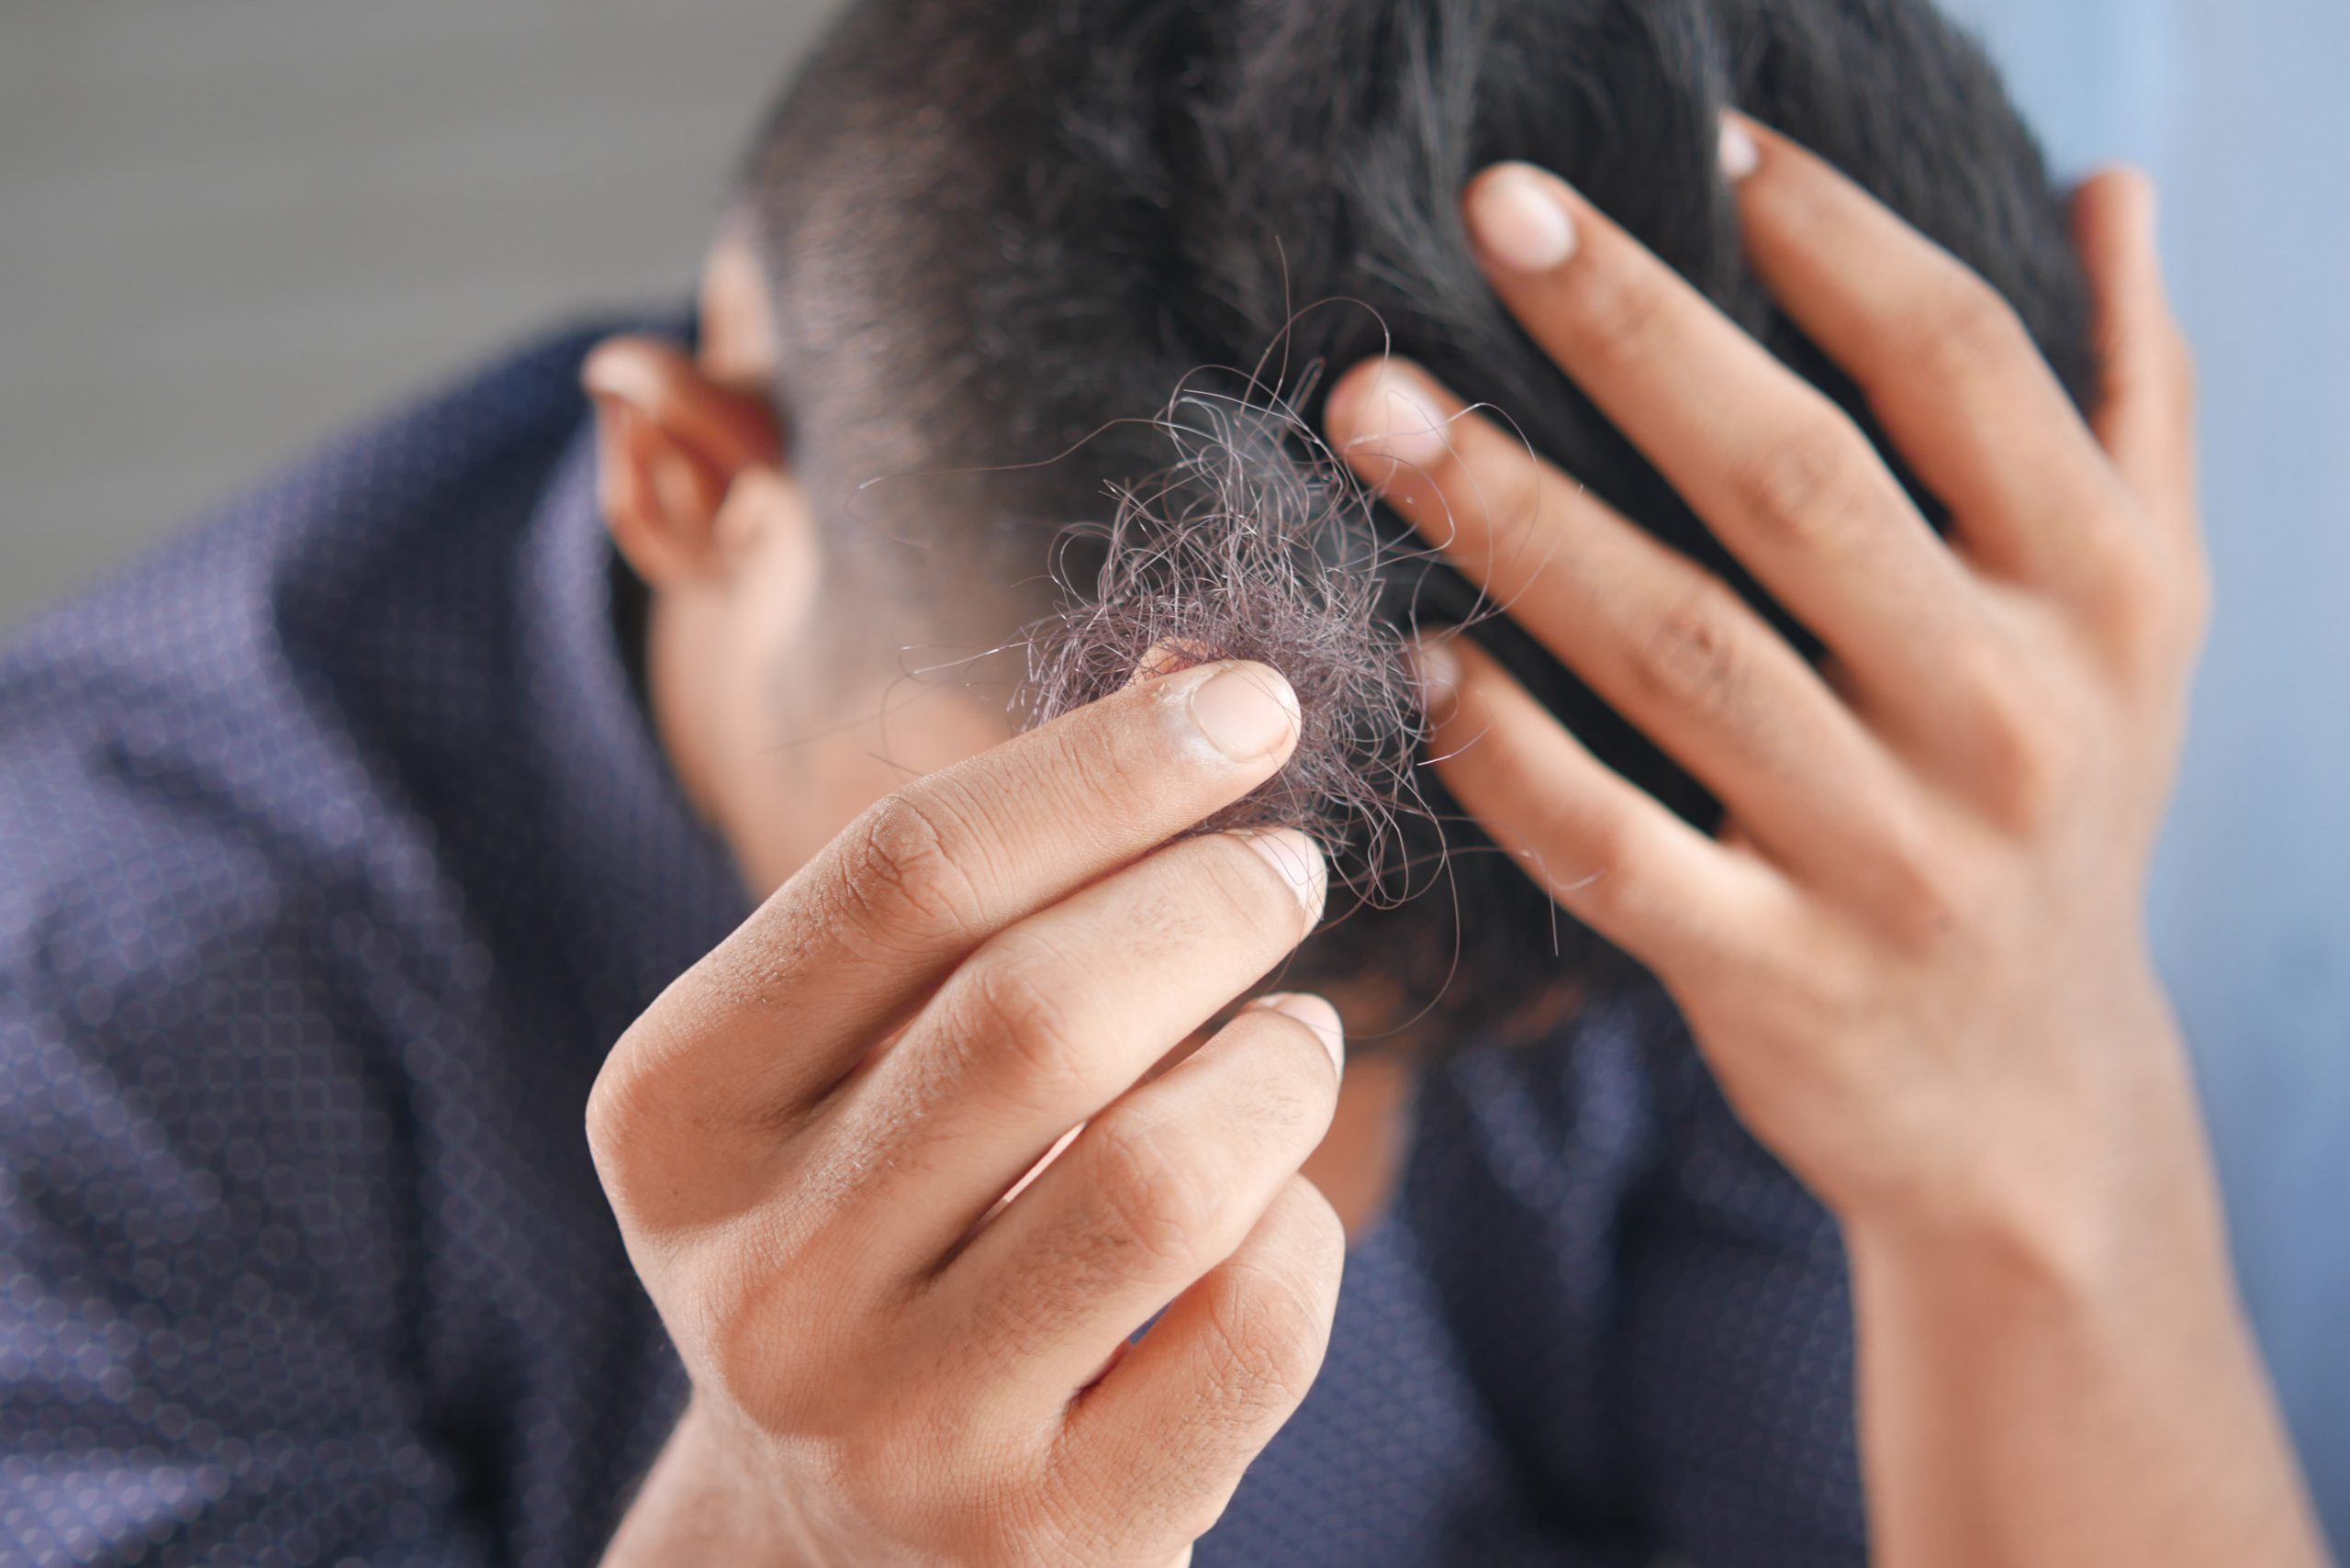 Mittel gegen Haarausfall Männer